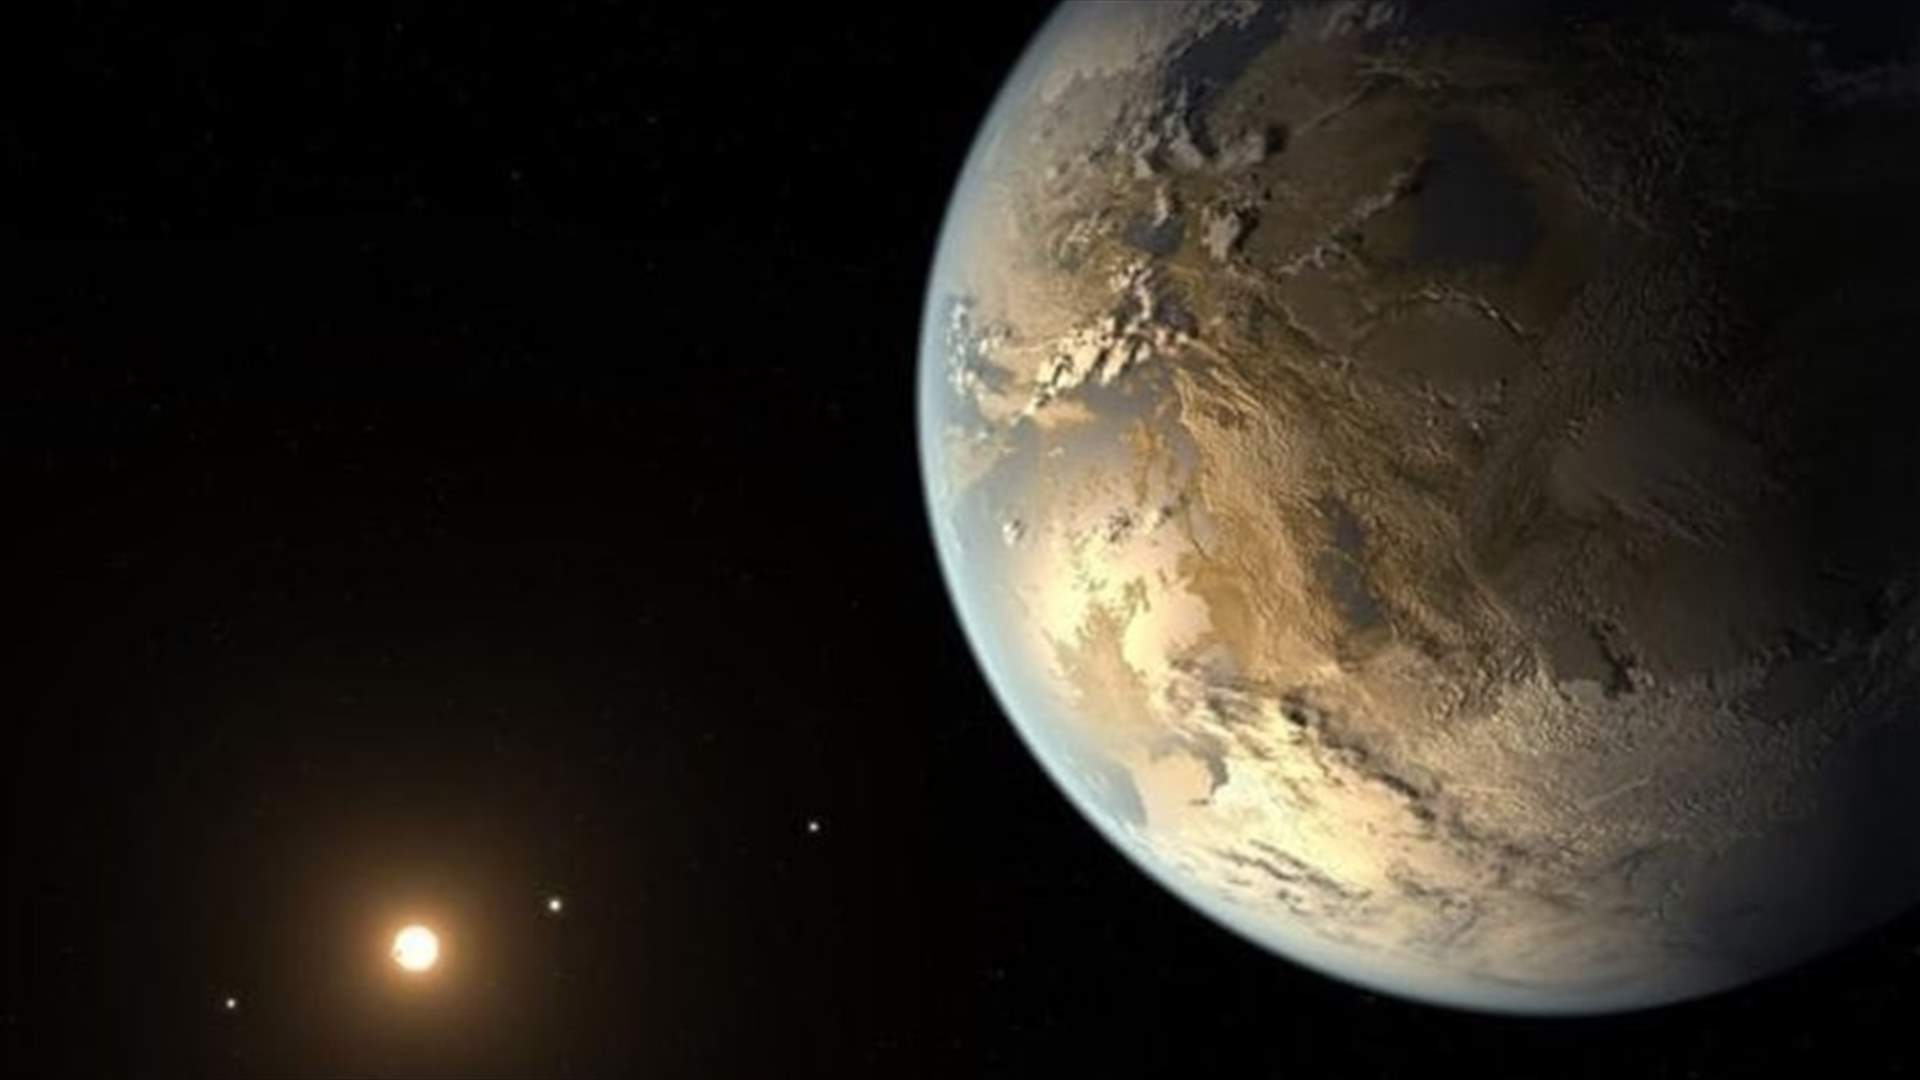 ناسا تستعدّ للإعلان عن نتائج جديدة بشأن كواكب خارج النظام الشمسي